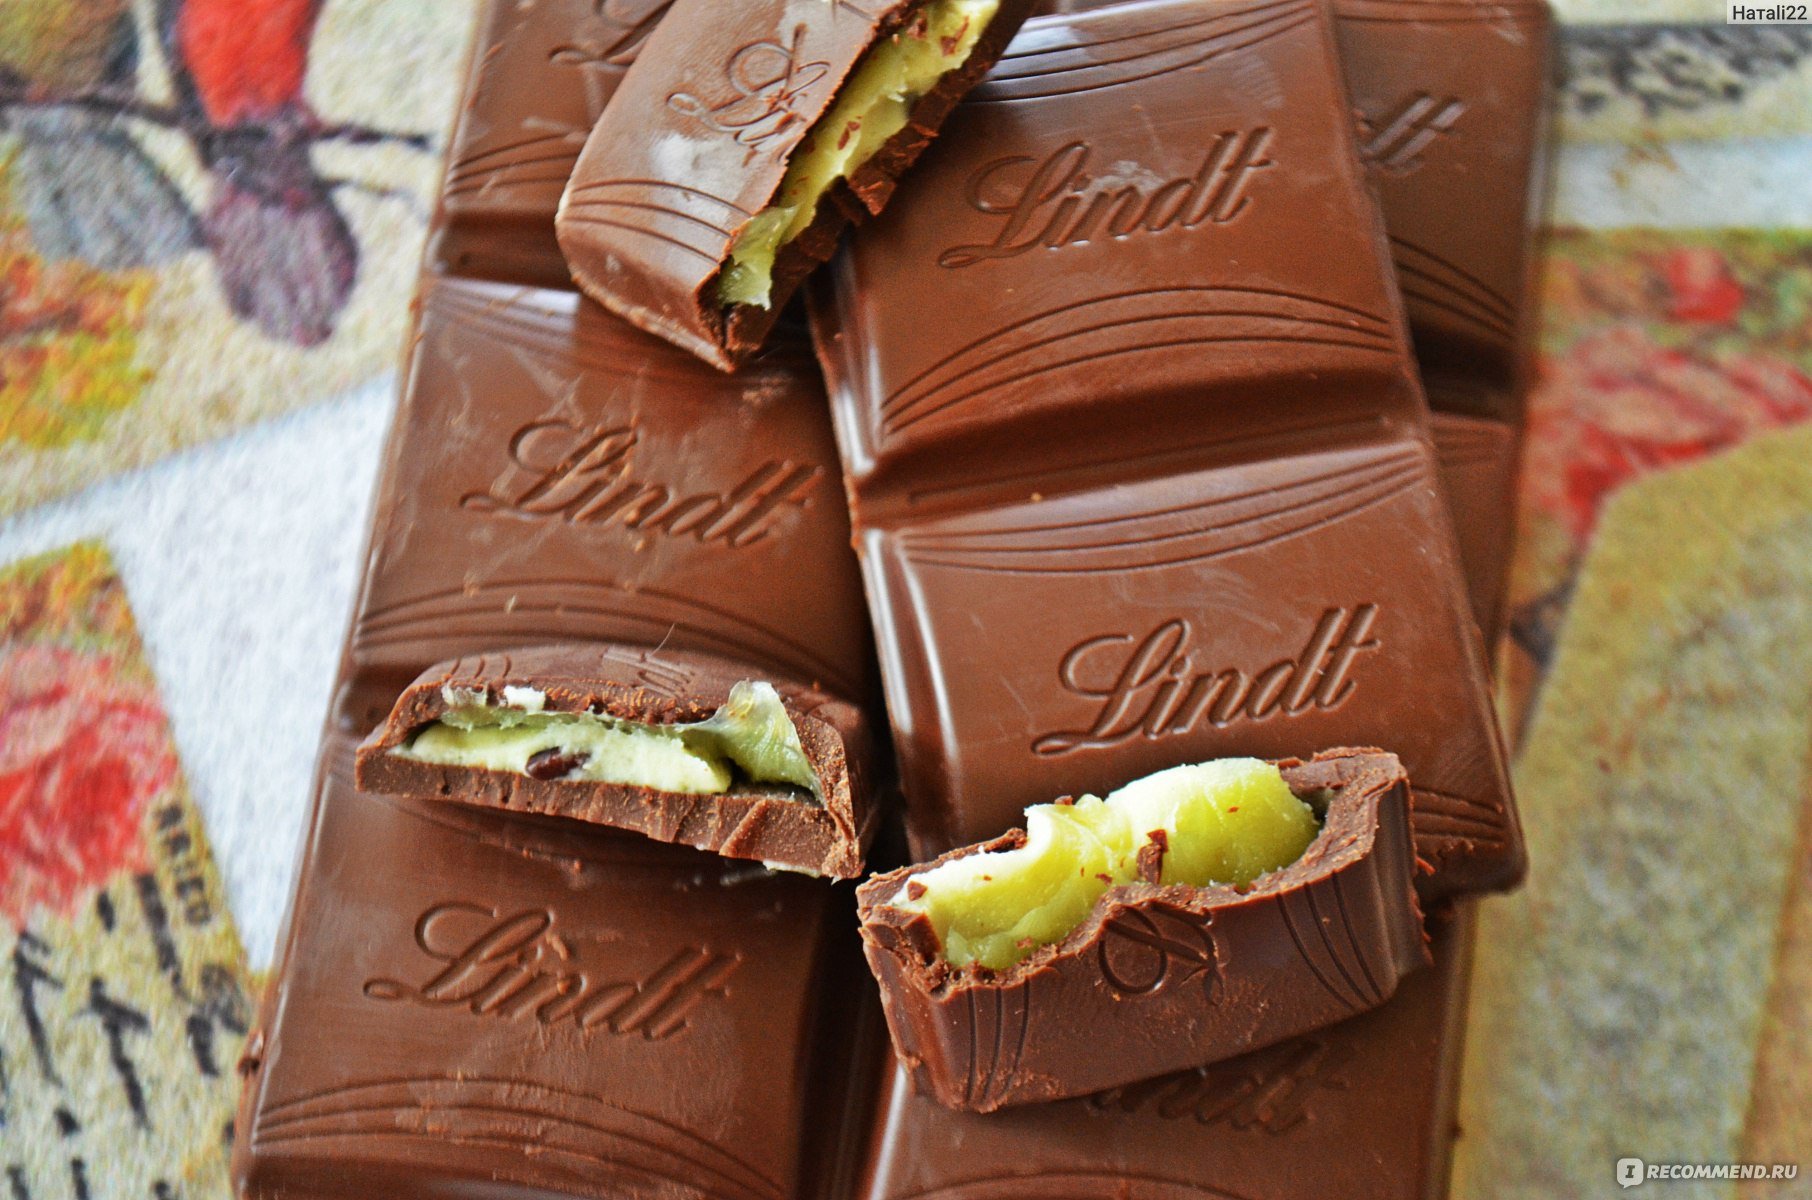 Choco mint. Lindt мятный шоколад. Мята "Chocolate" (шоколад). Мятный шоколадка Lindt. Шоколад Линдт с мятой.